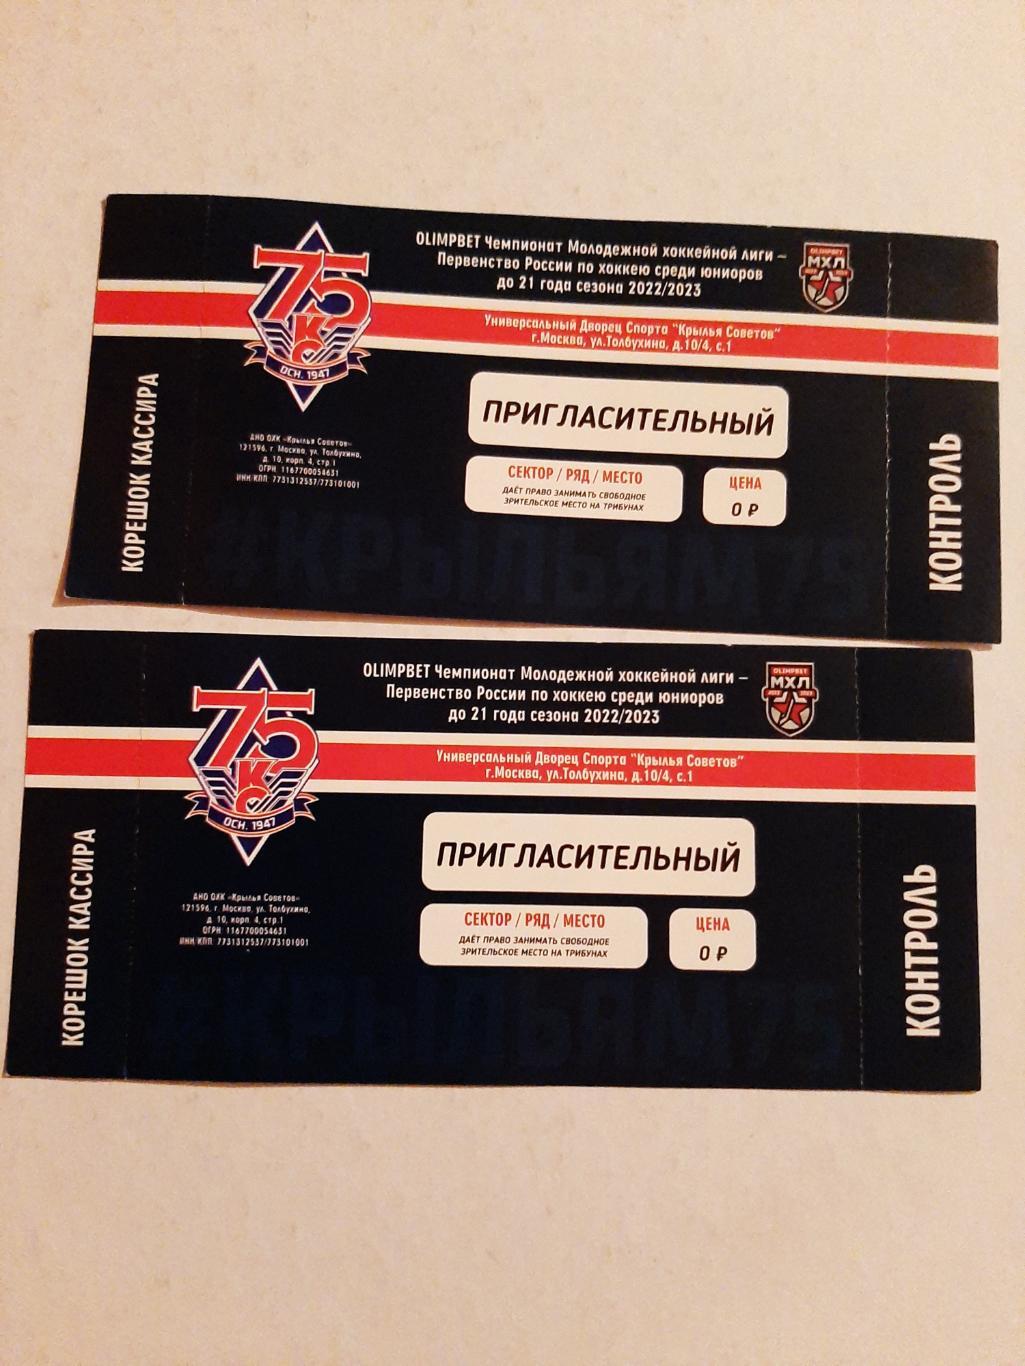 Пригласительный билет МХК Крылья Советов 2022/2023